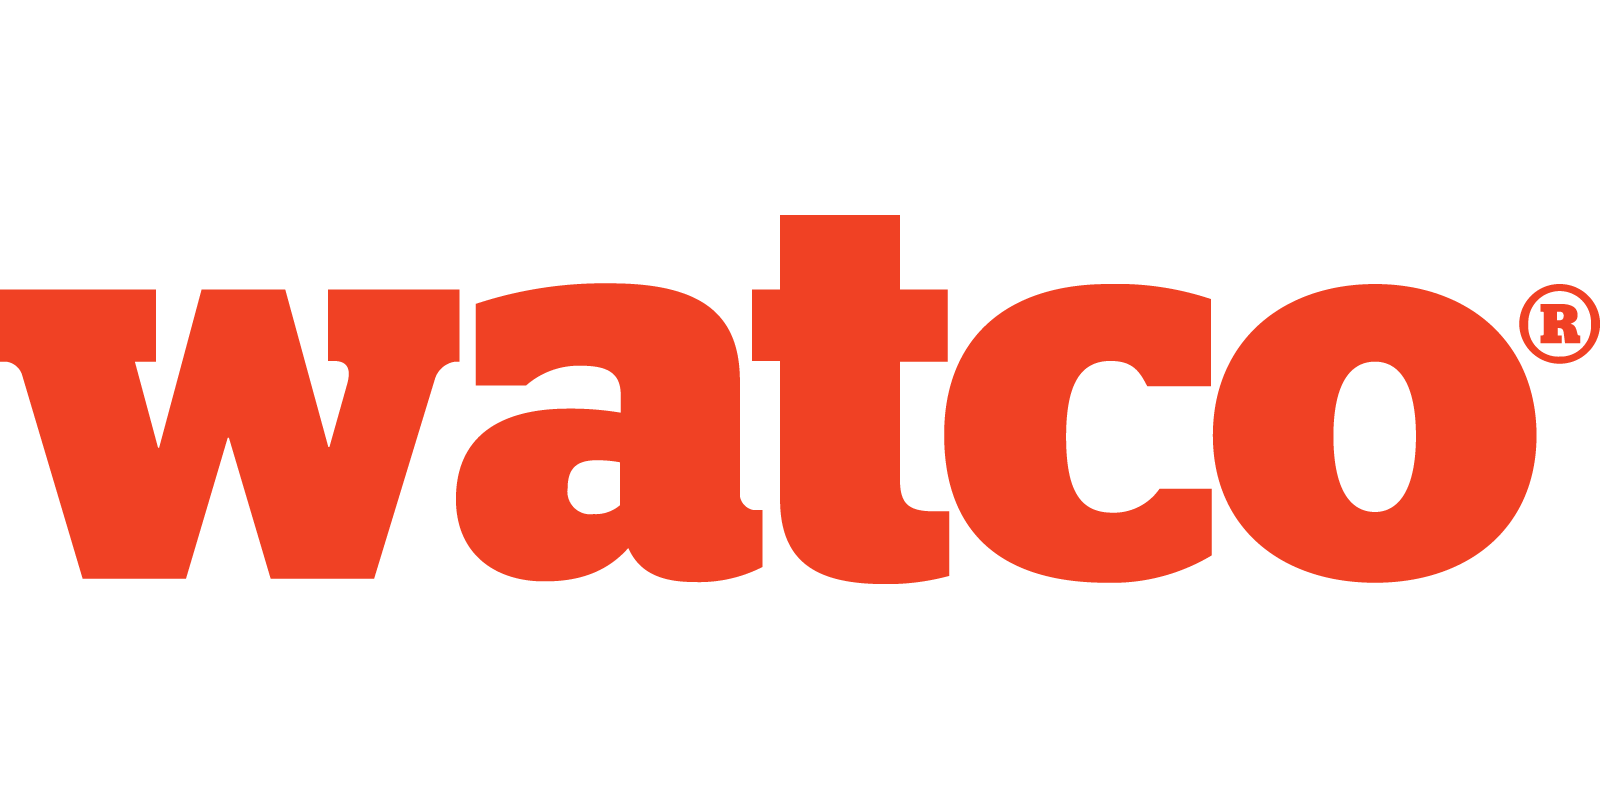 (c) Watco.co.uk